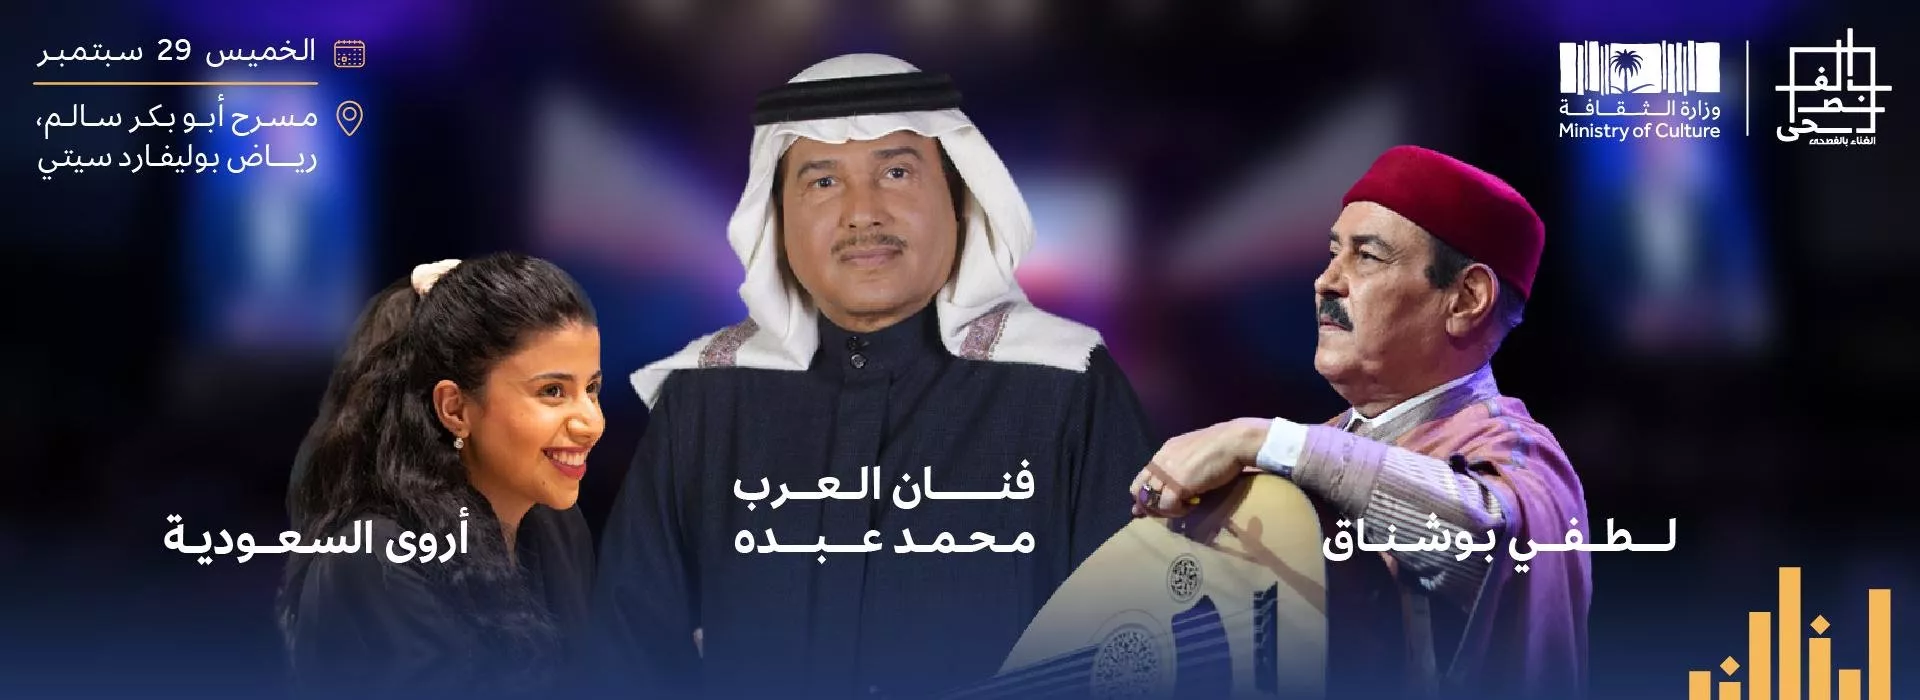 مَن سيحيي حفلات مهرجان الغناء بالفصحى في الرياض بنسخته الثانية؟ وهكذا يمكنكِ حجز التذاكر